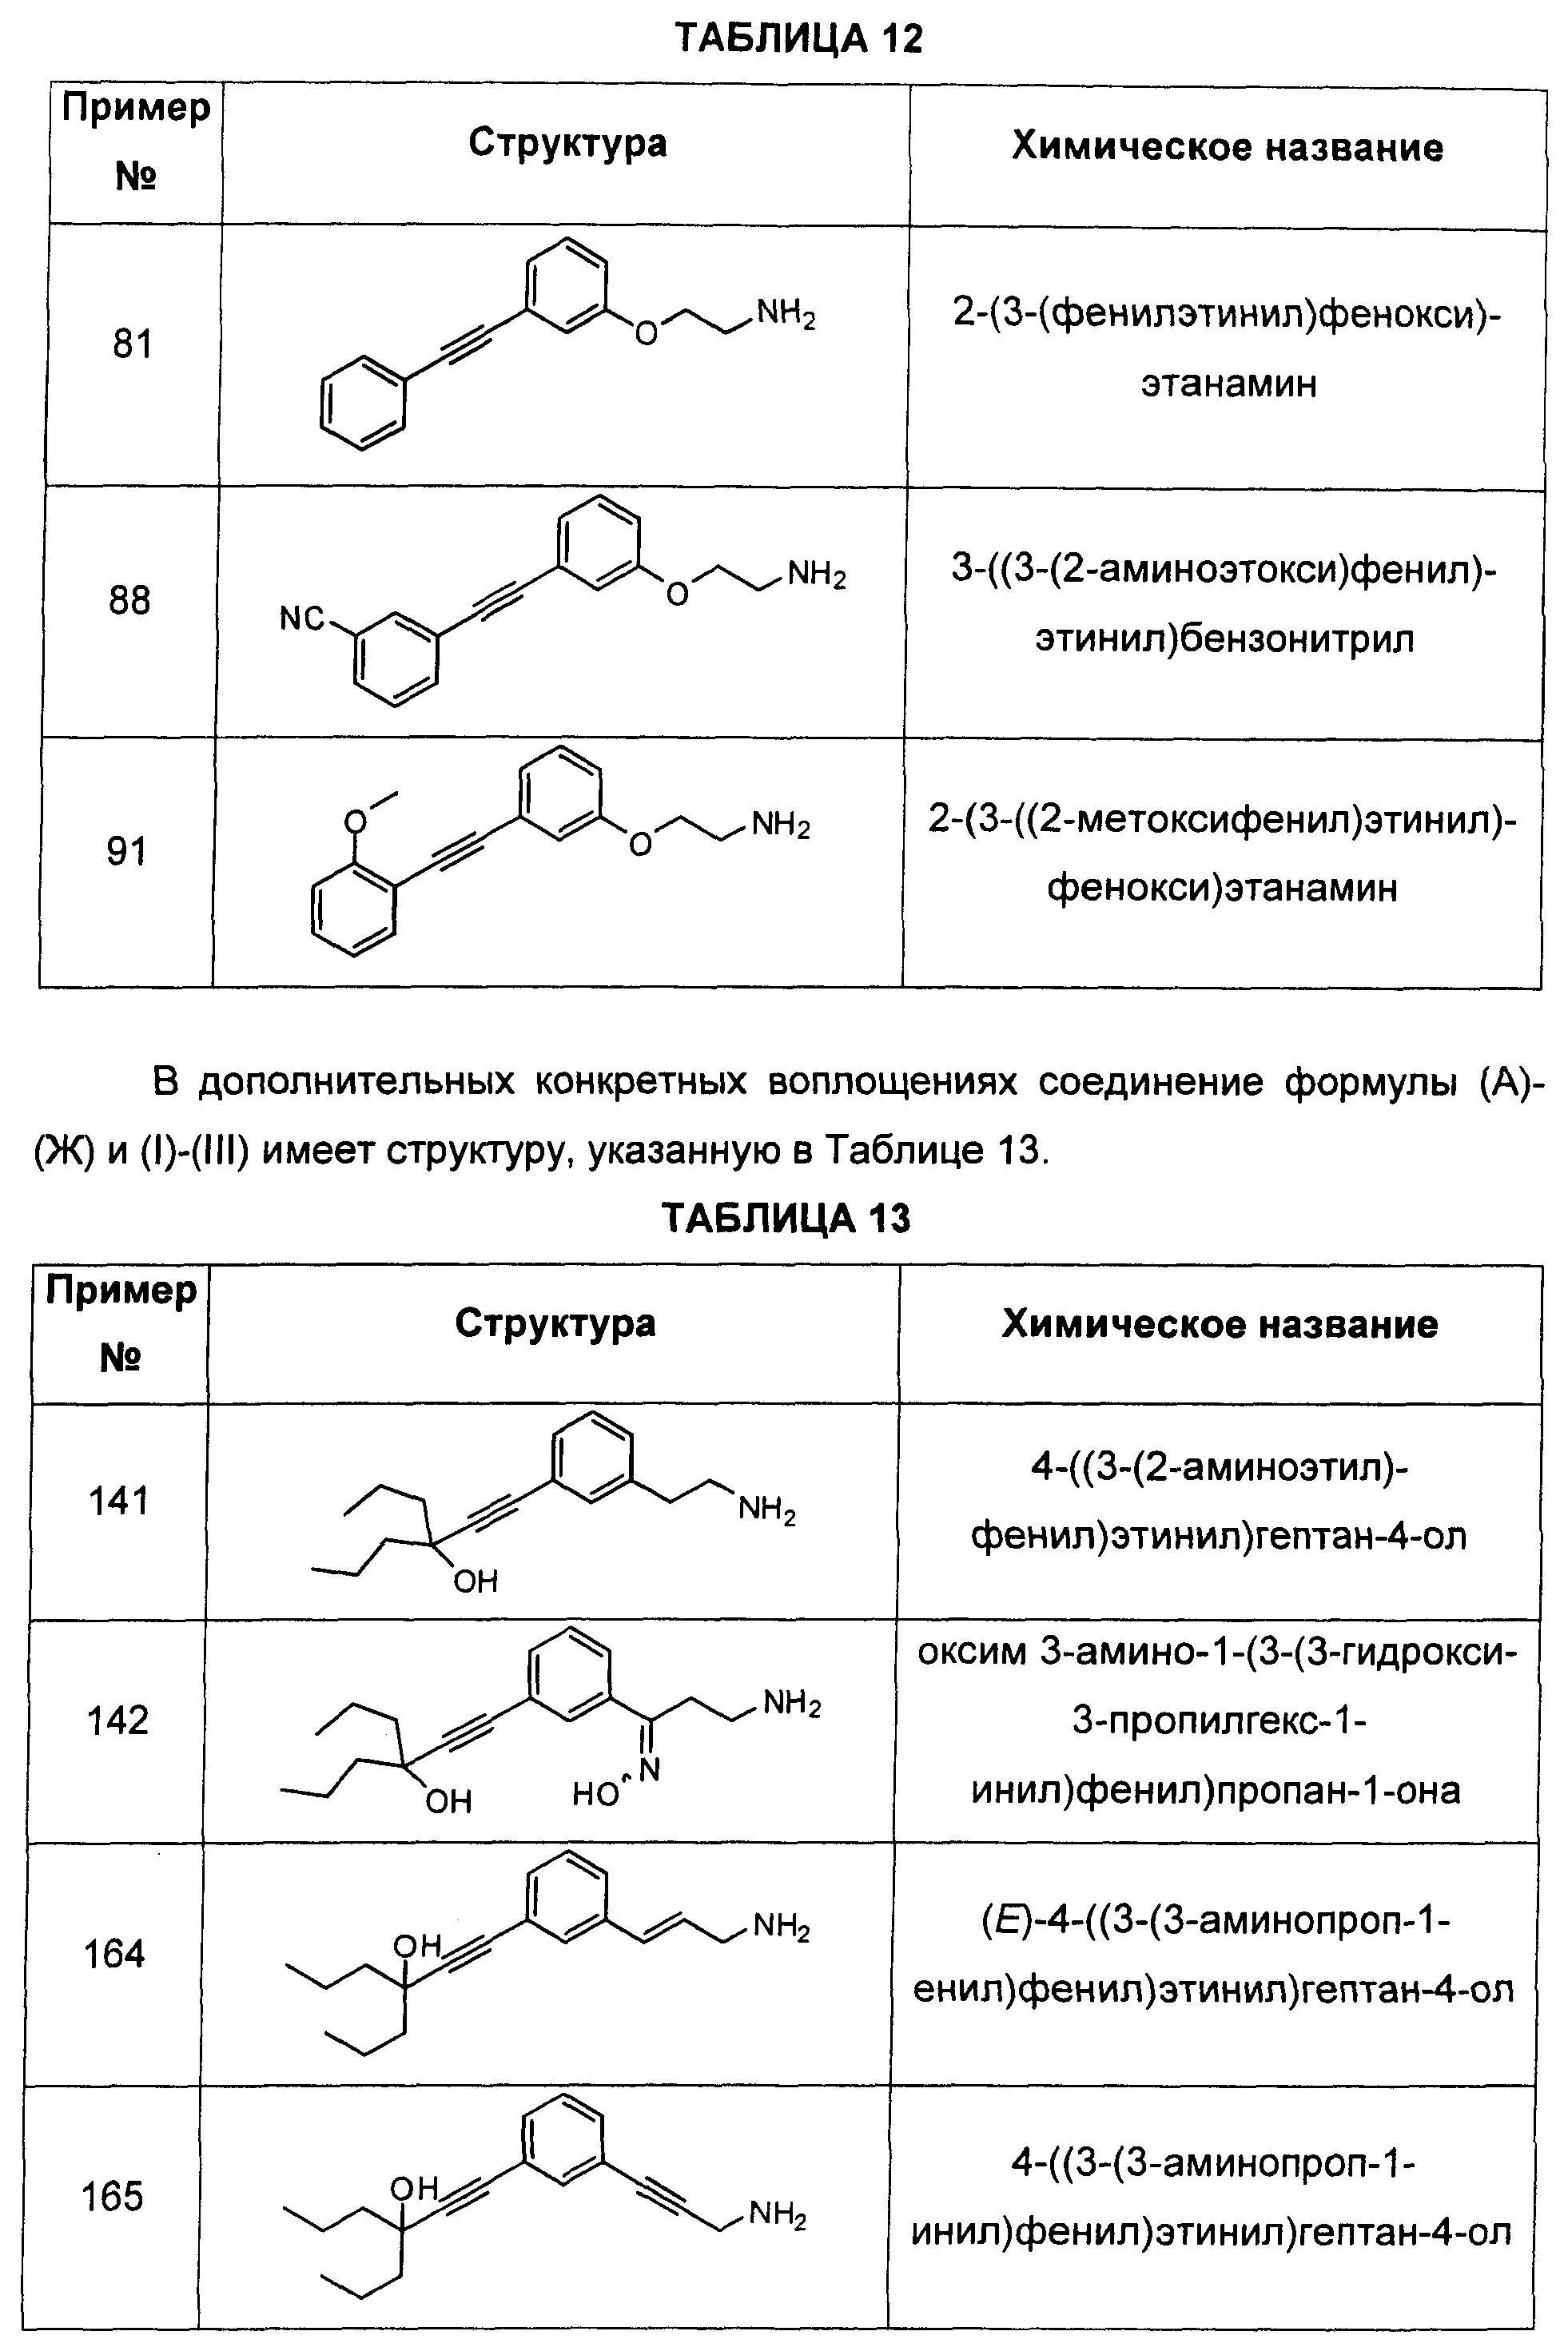 Сколько соединений представлено. Этанамин. 2 Феноксиэтанамин. Дайте название представленным соединениям.